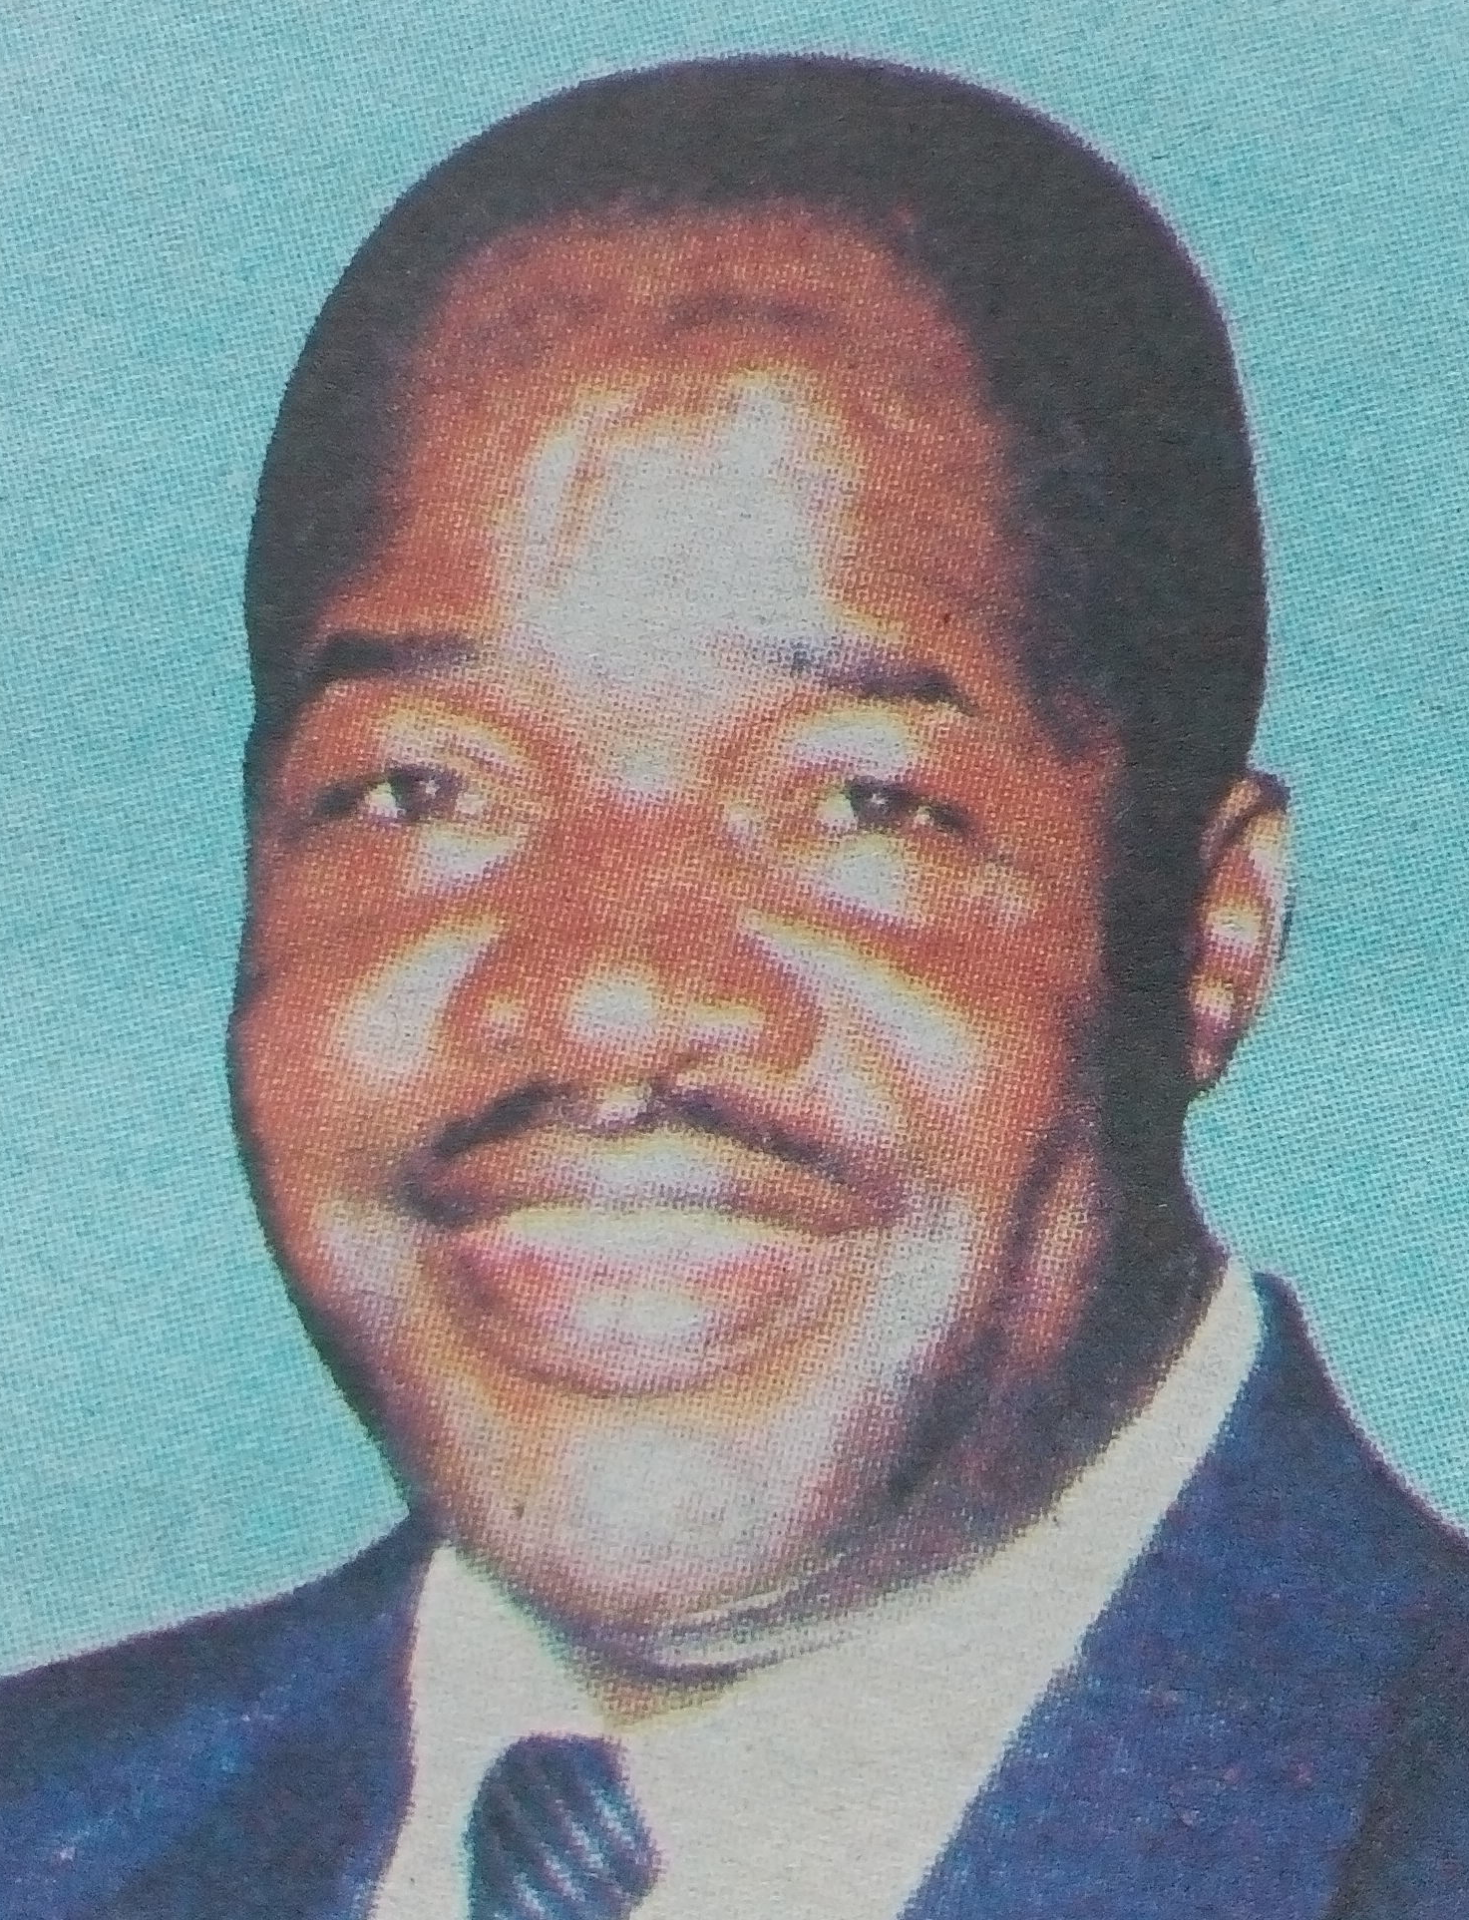 Obituary Image of John Paul Shikunyi Mandu